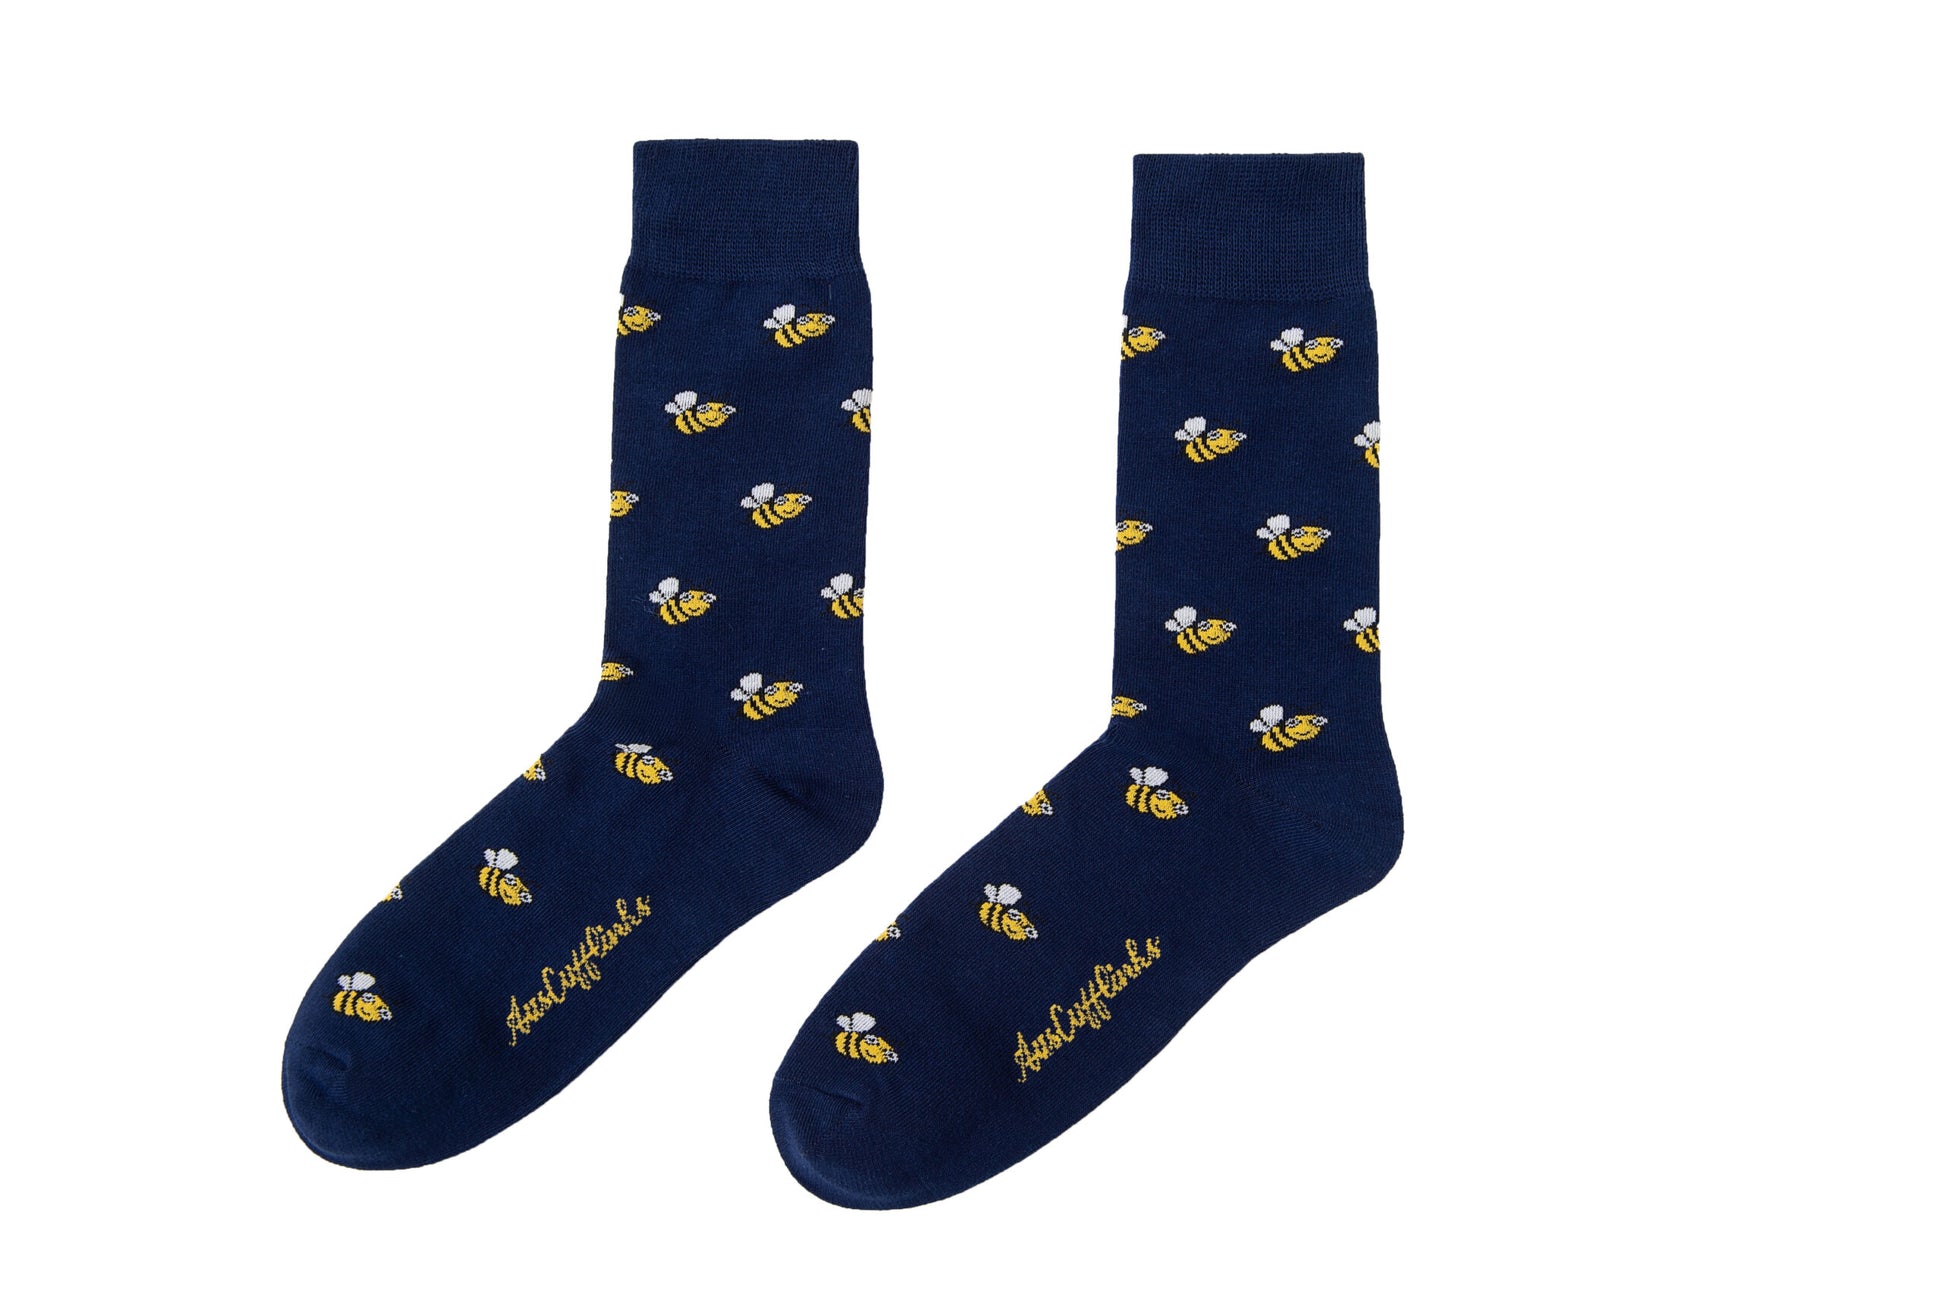 A pair of Bee Socks